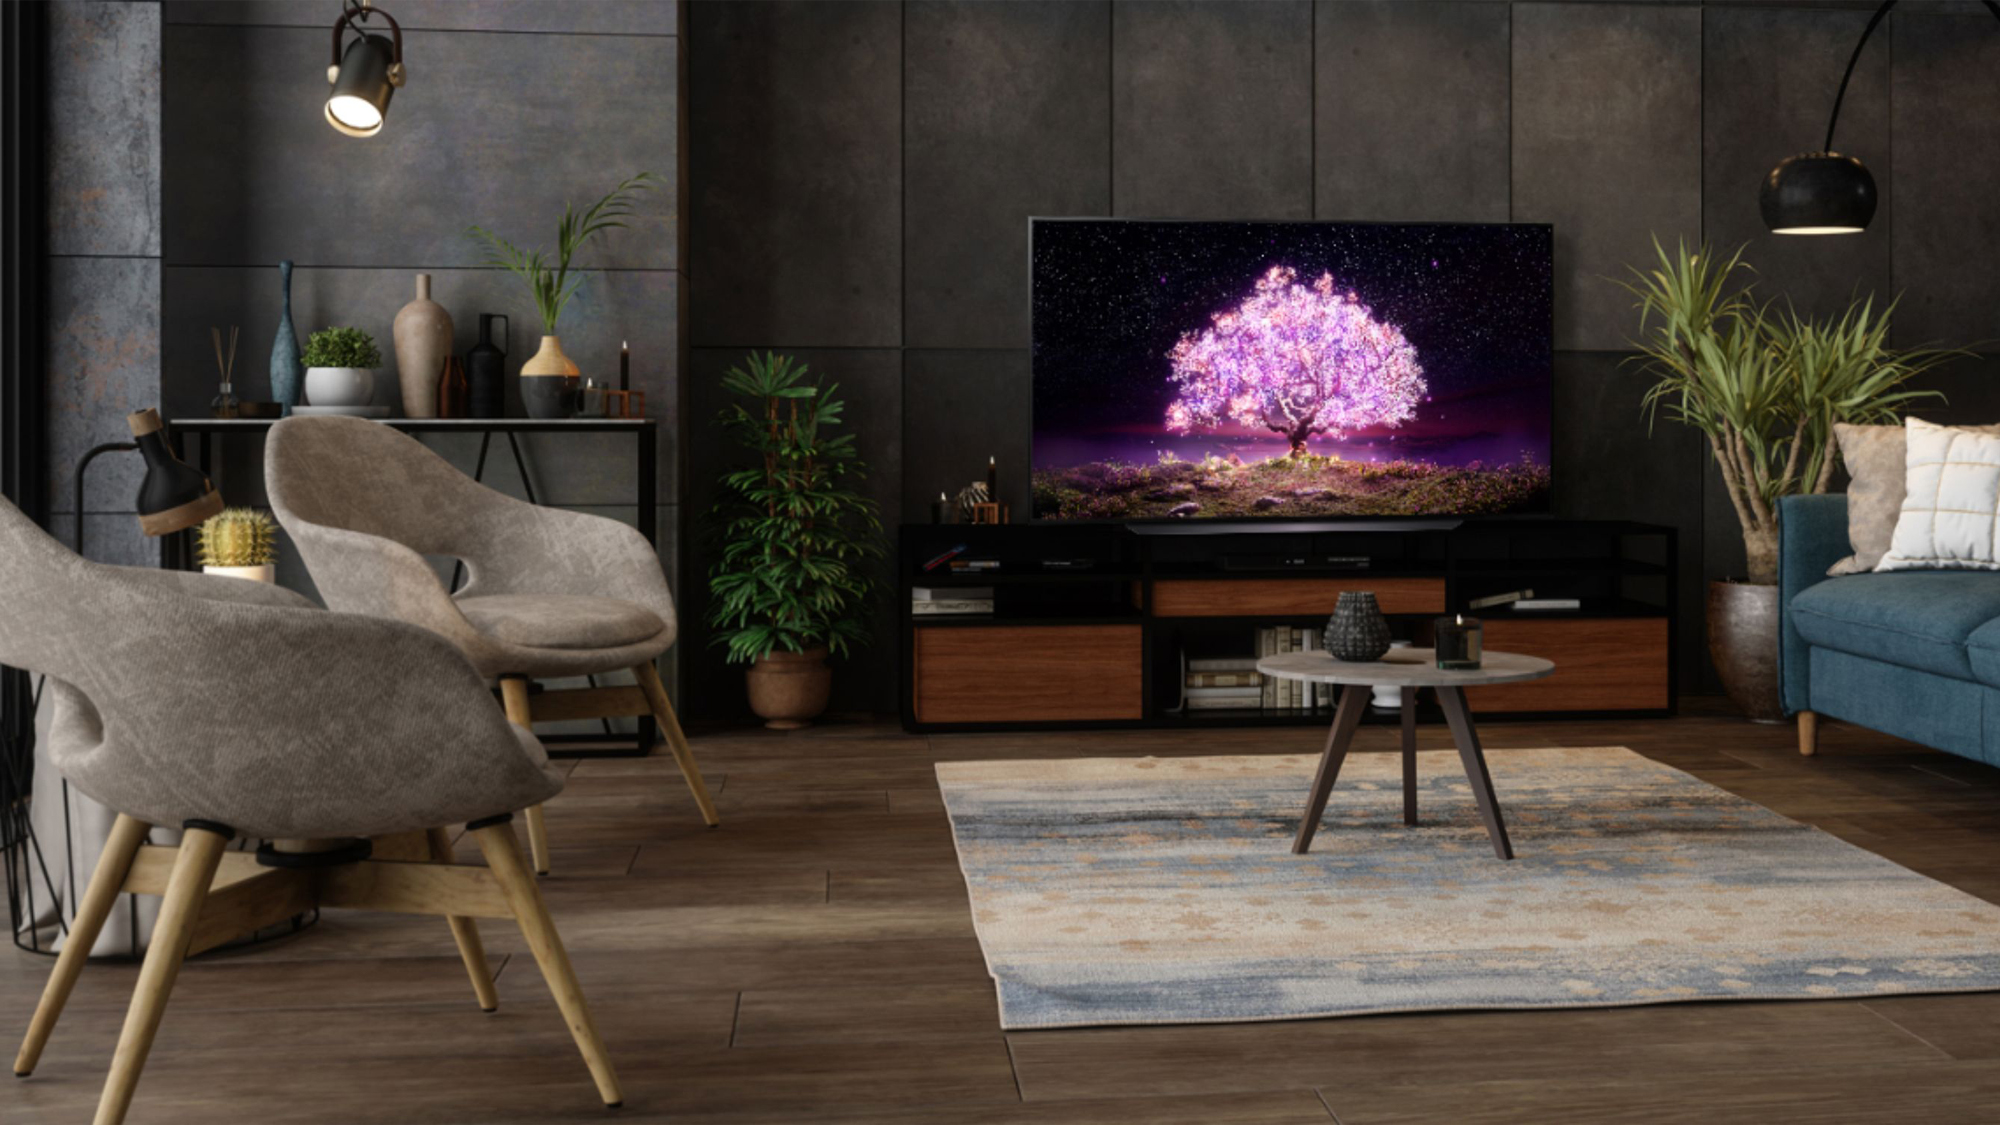 LG C1 OLED TV display in livingroom